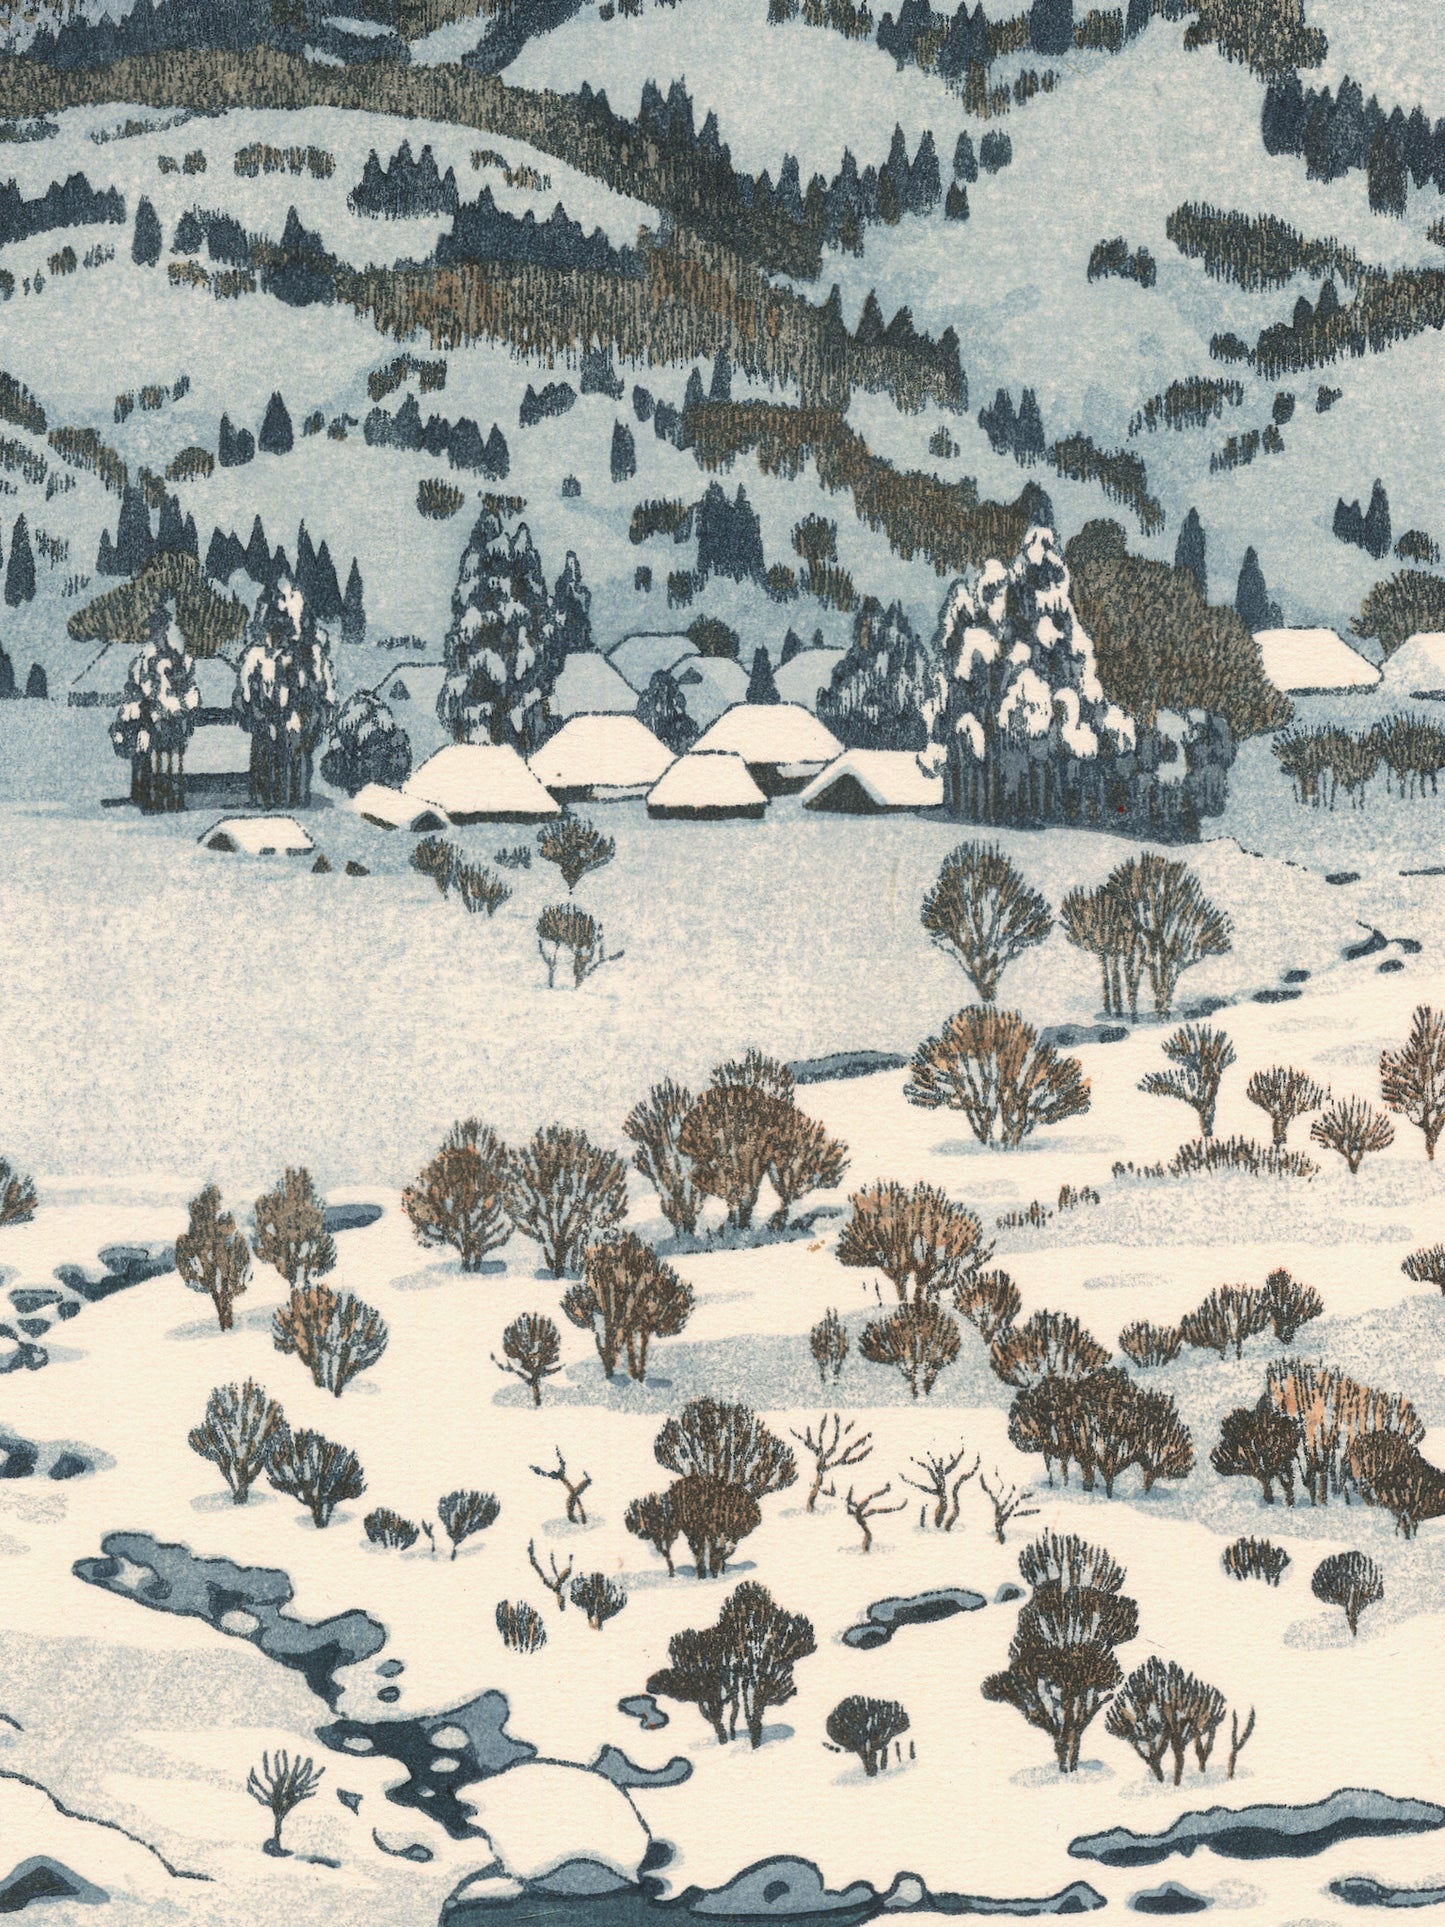 estampe japonaise paysage de neige, rivière, maison et campagne enneigées